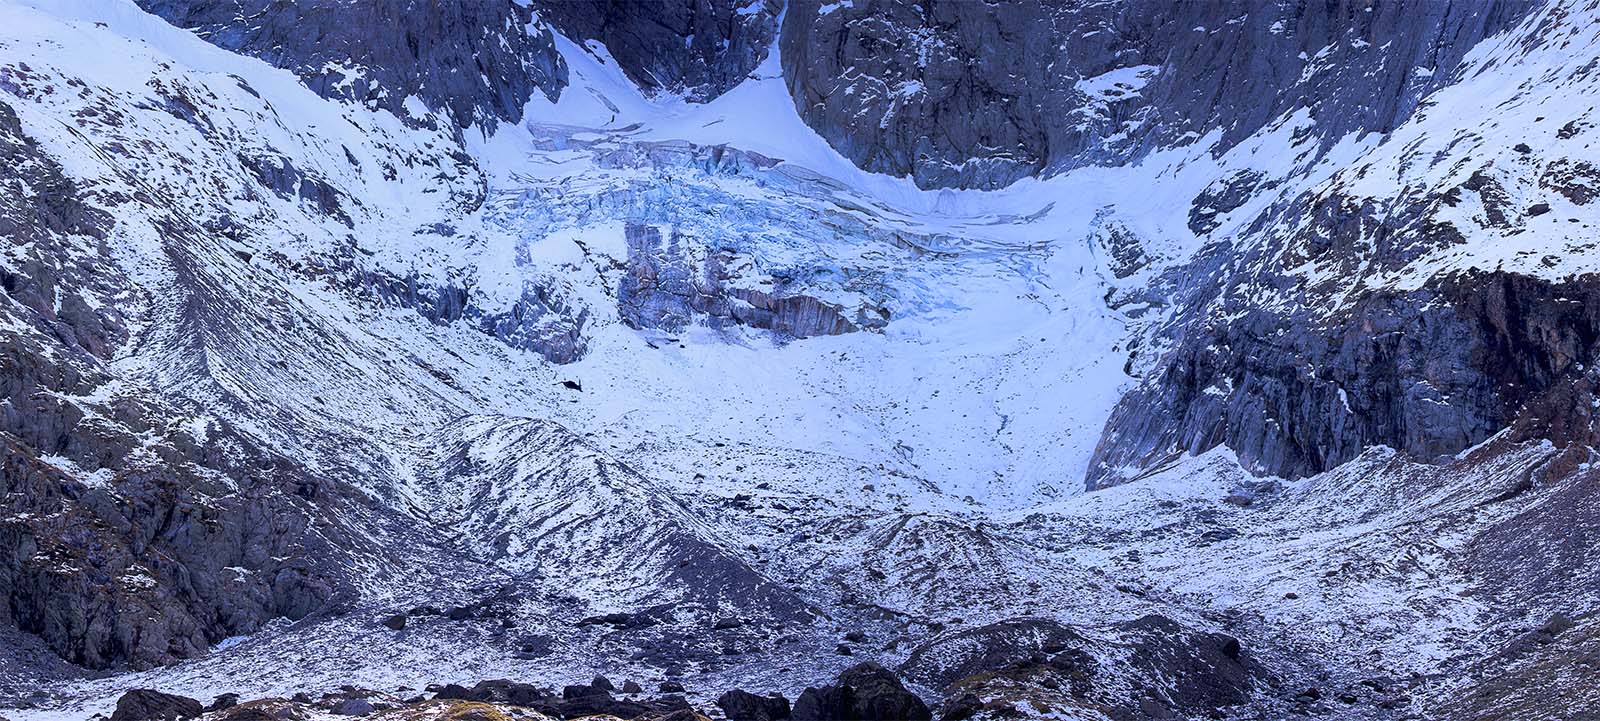 Le glacier des Oulettes de Gaube, novembre 2015.